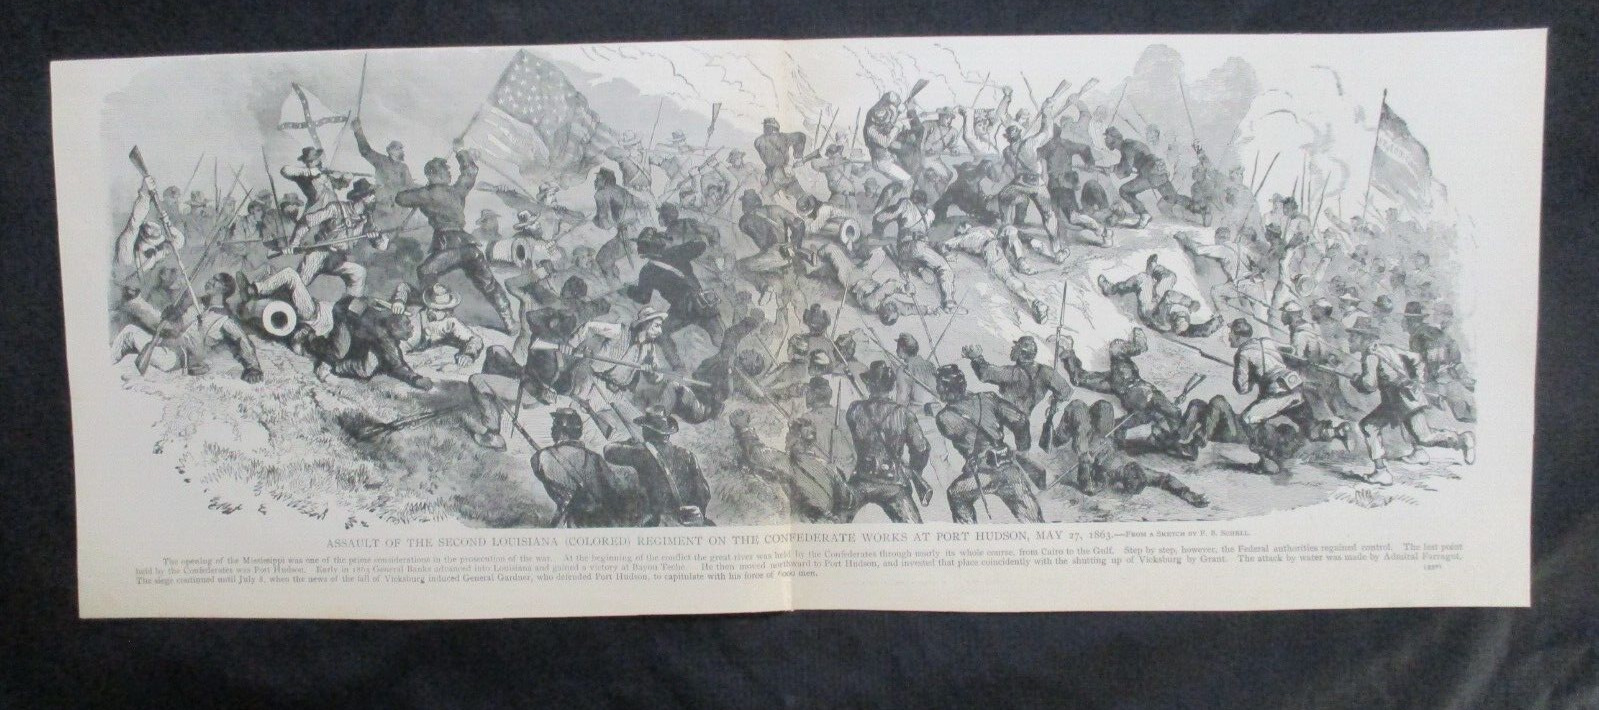 1885 Civil War Print - 2nd Louisiana Regiment Attack Confederates, Port Hudson